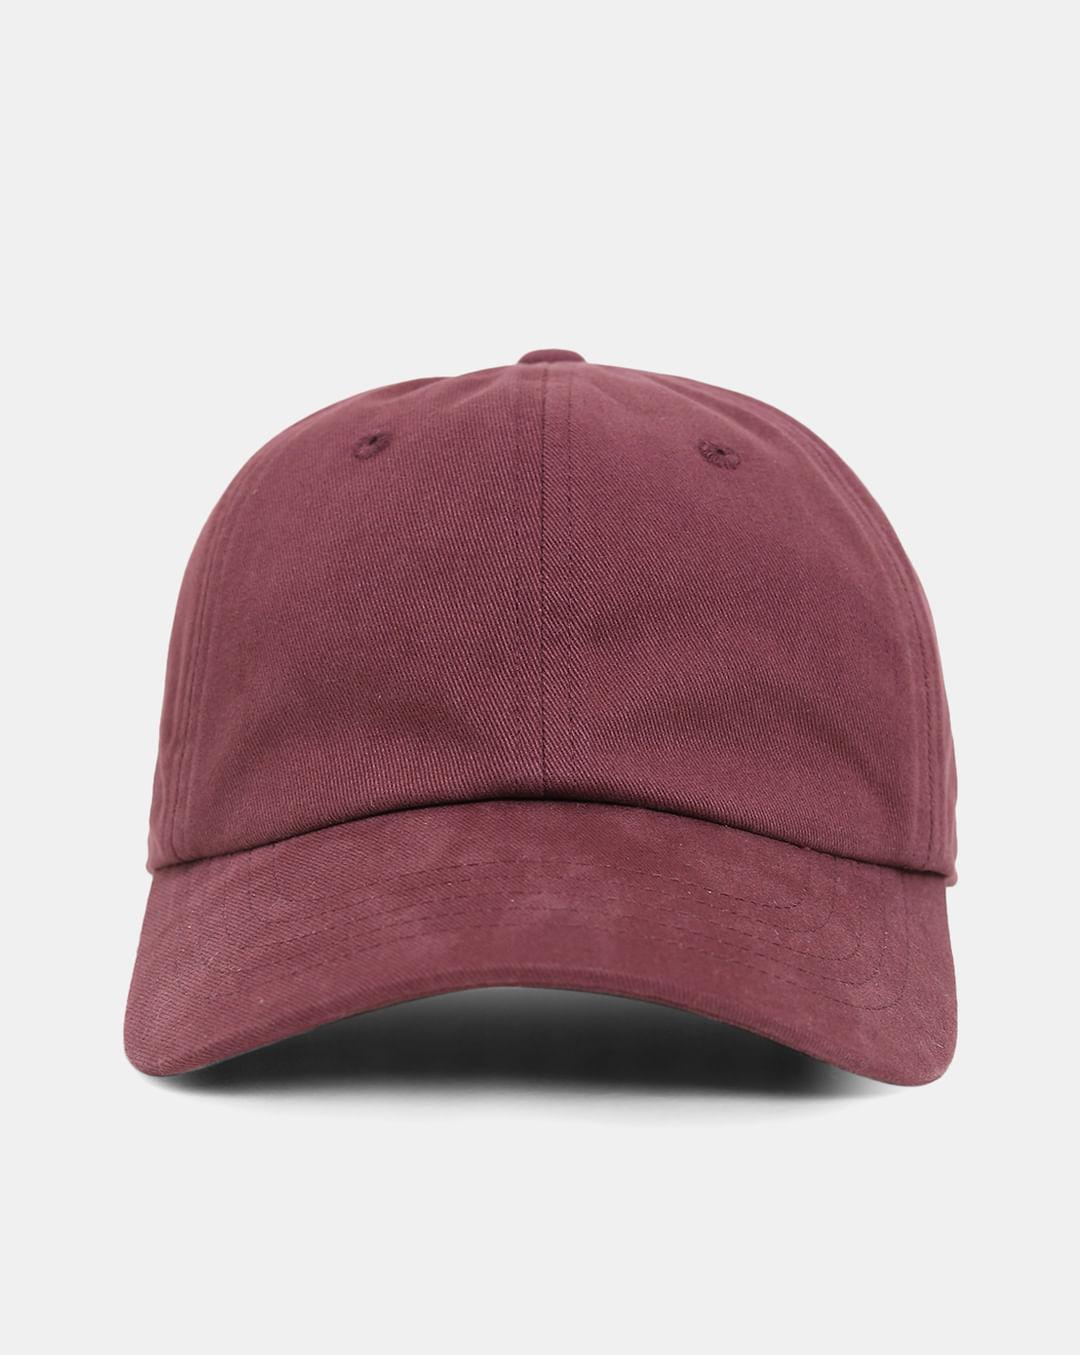 purple cotton cap